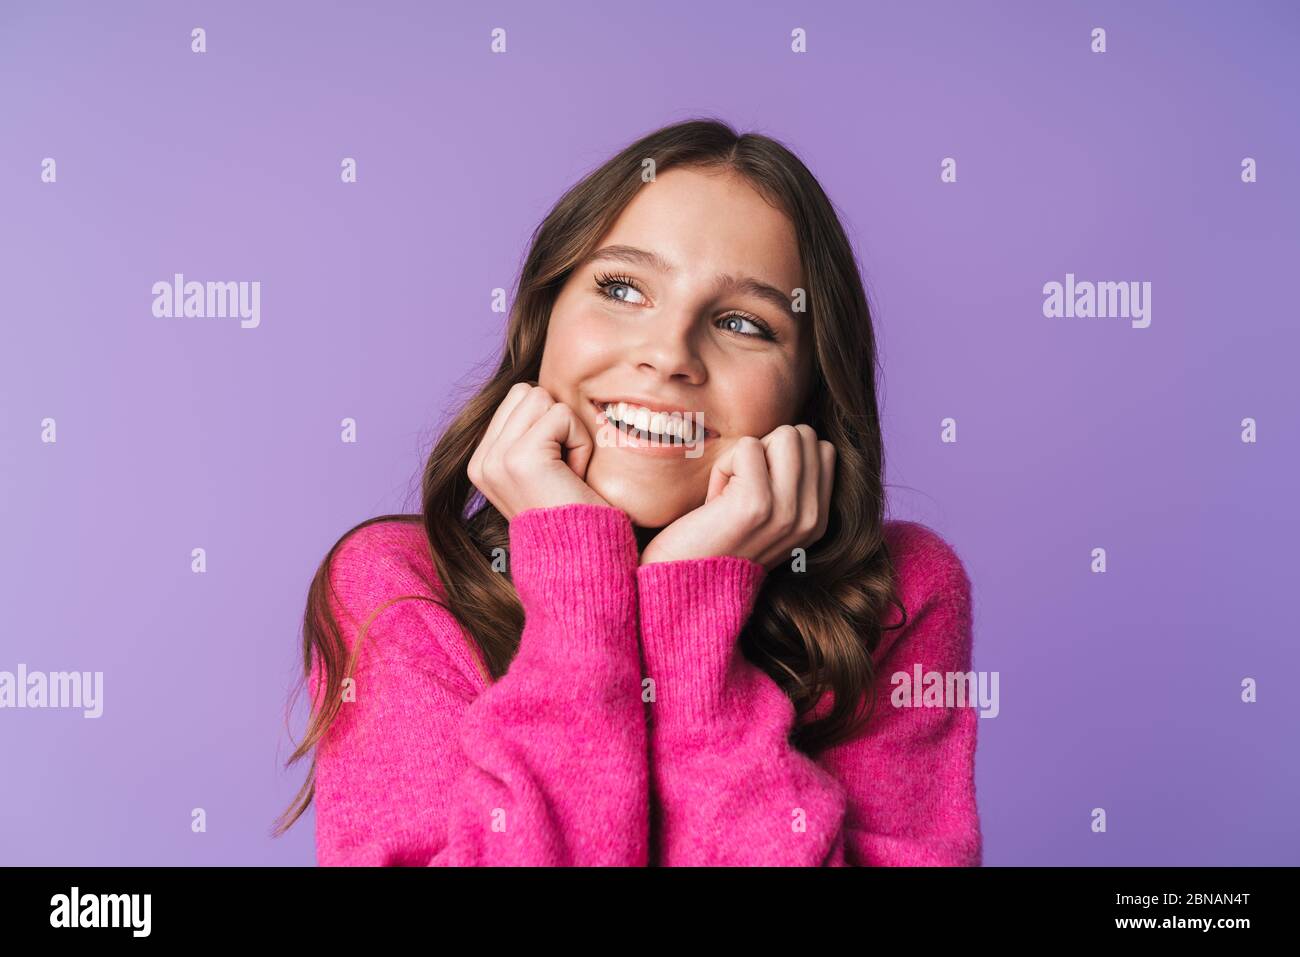 Image de jeune belle femme avec de longs cheveux bruns souriant et touchant son visage isolé sur fond violet Banque D'Images